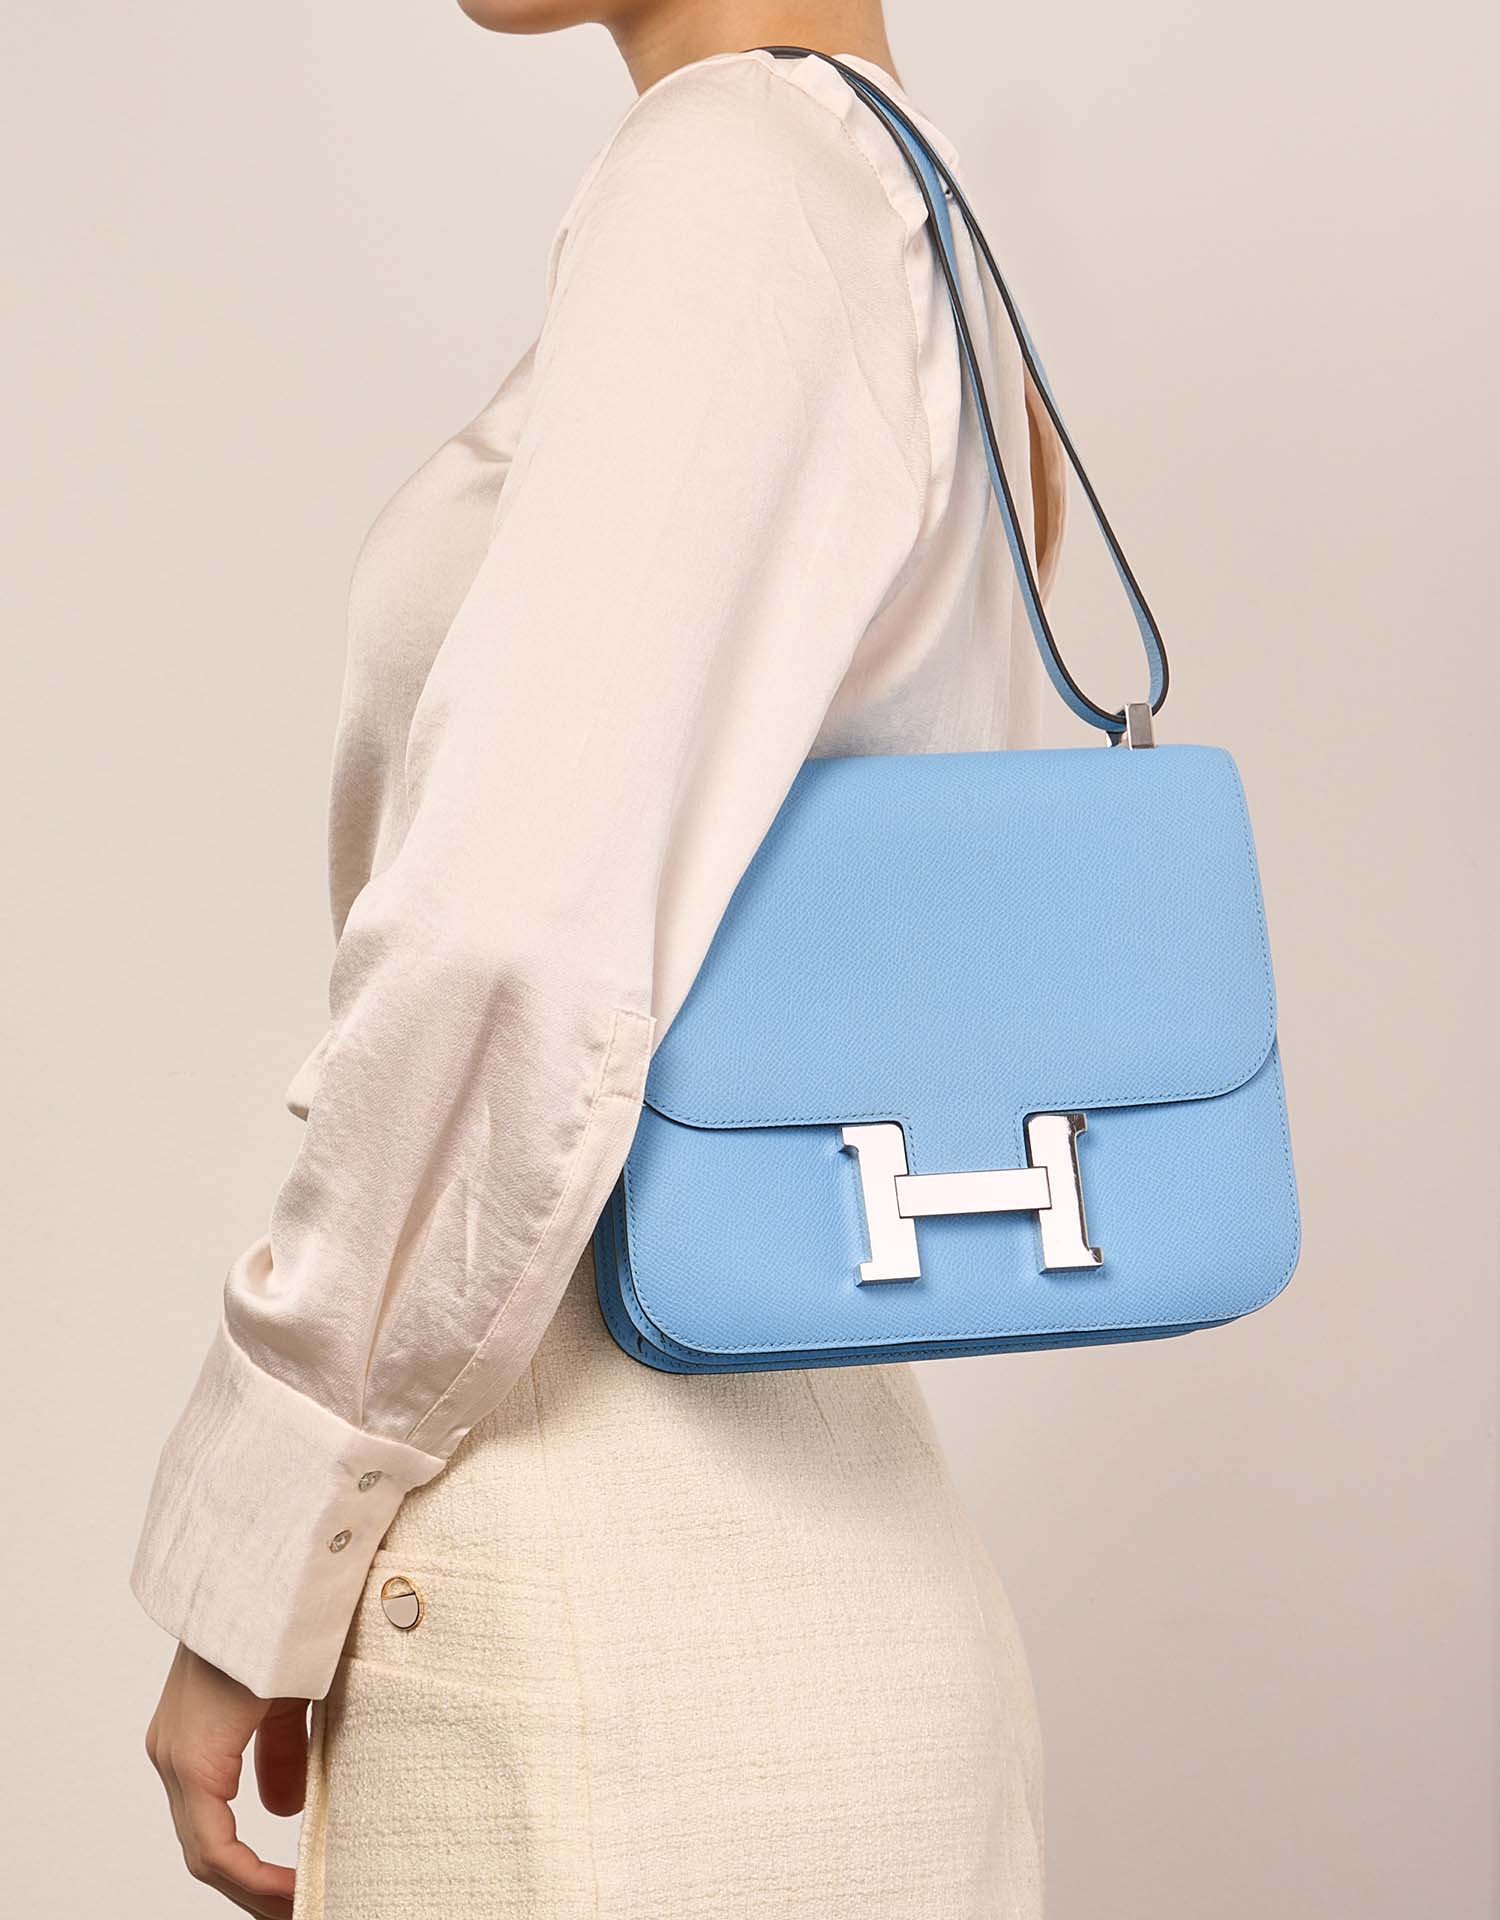 Hermès Constance 24 Celeste Größen Getragen| Verkaufen Sie Ihre Designer-Tasche auf Saclab.com